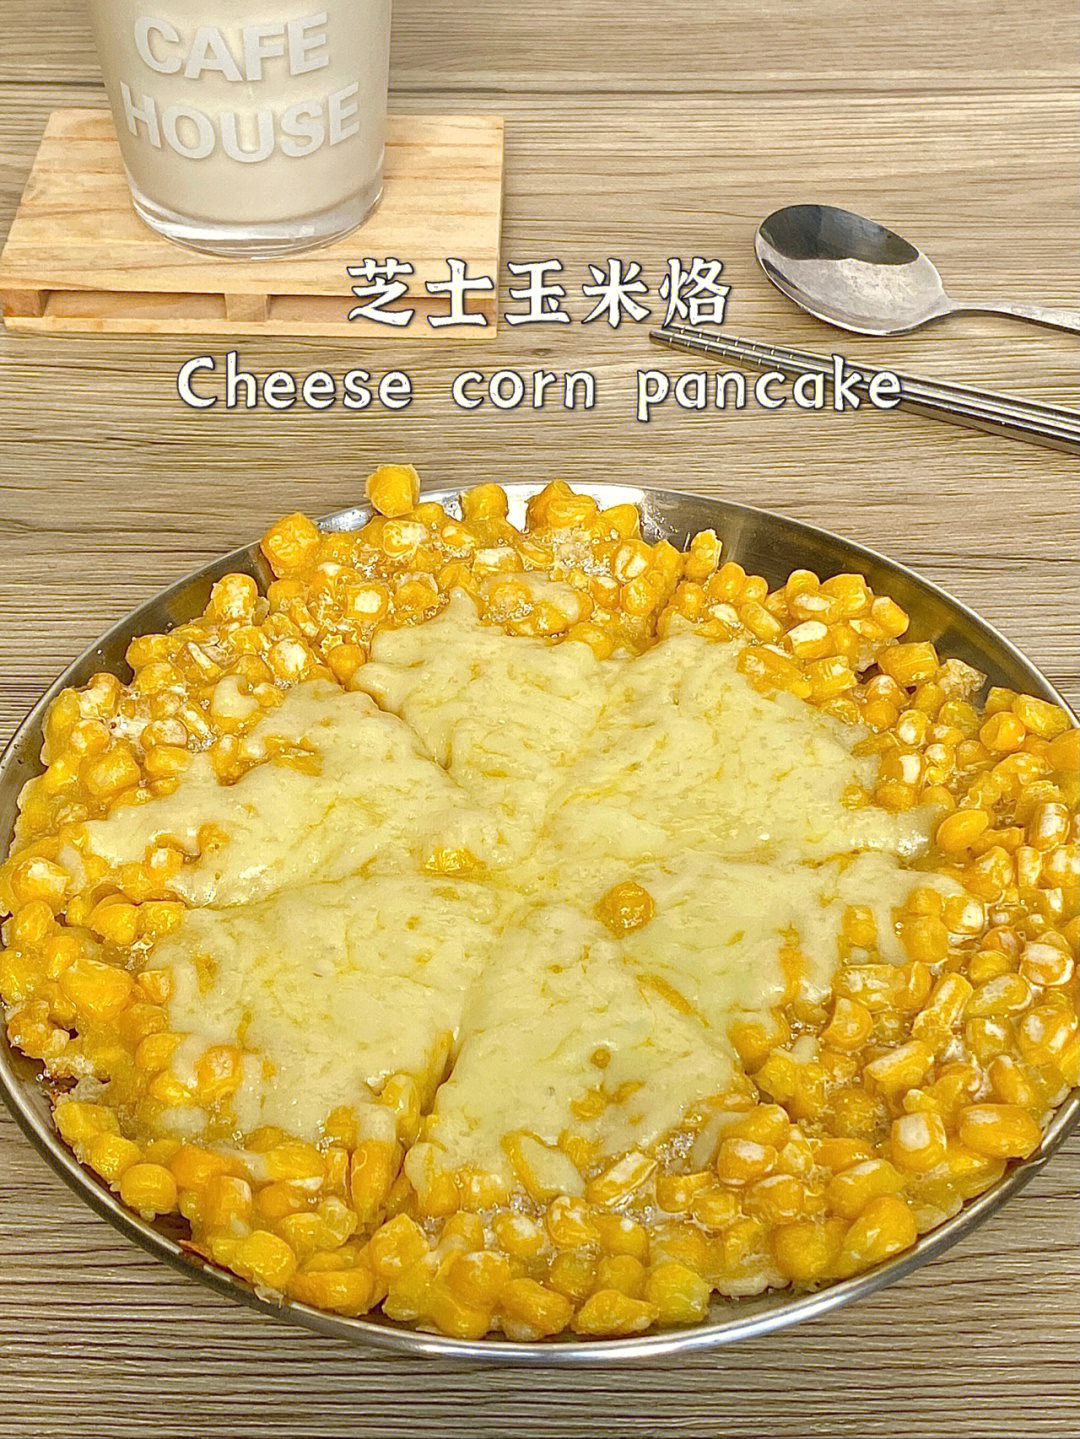 16615芝士玉米烙9992食材:玉米 粒150g,玉米淀粉50g,鸡蛋